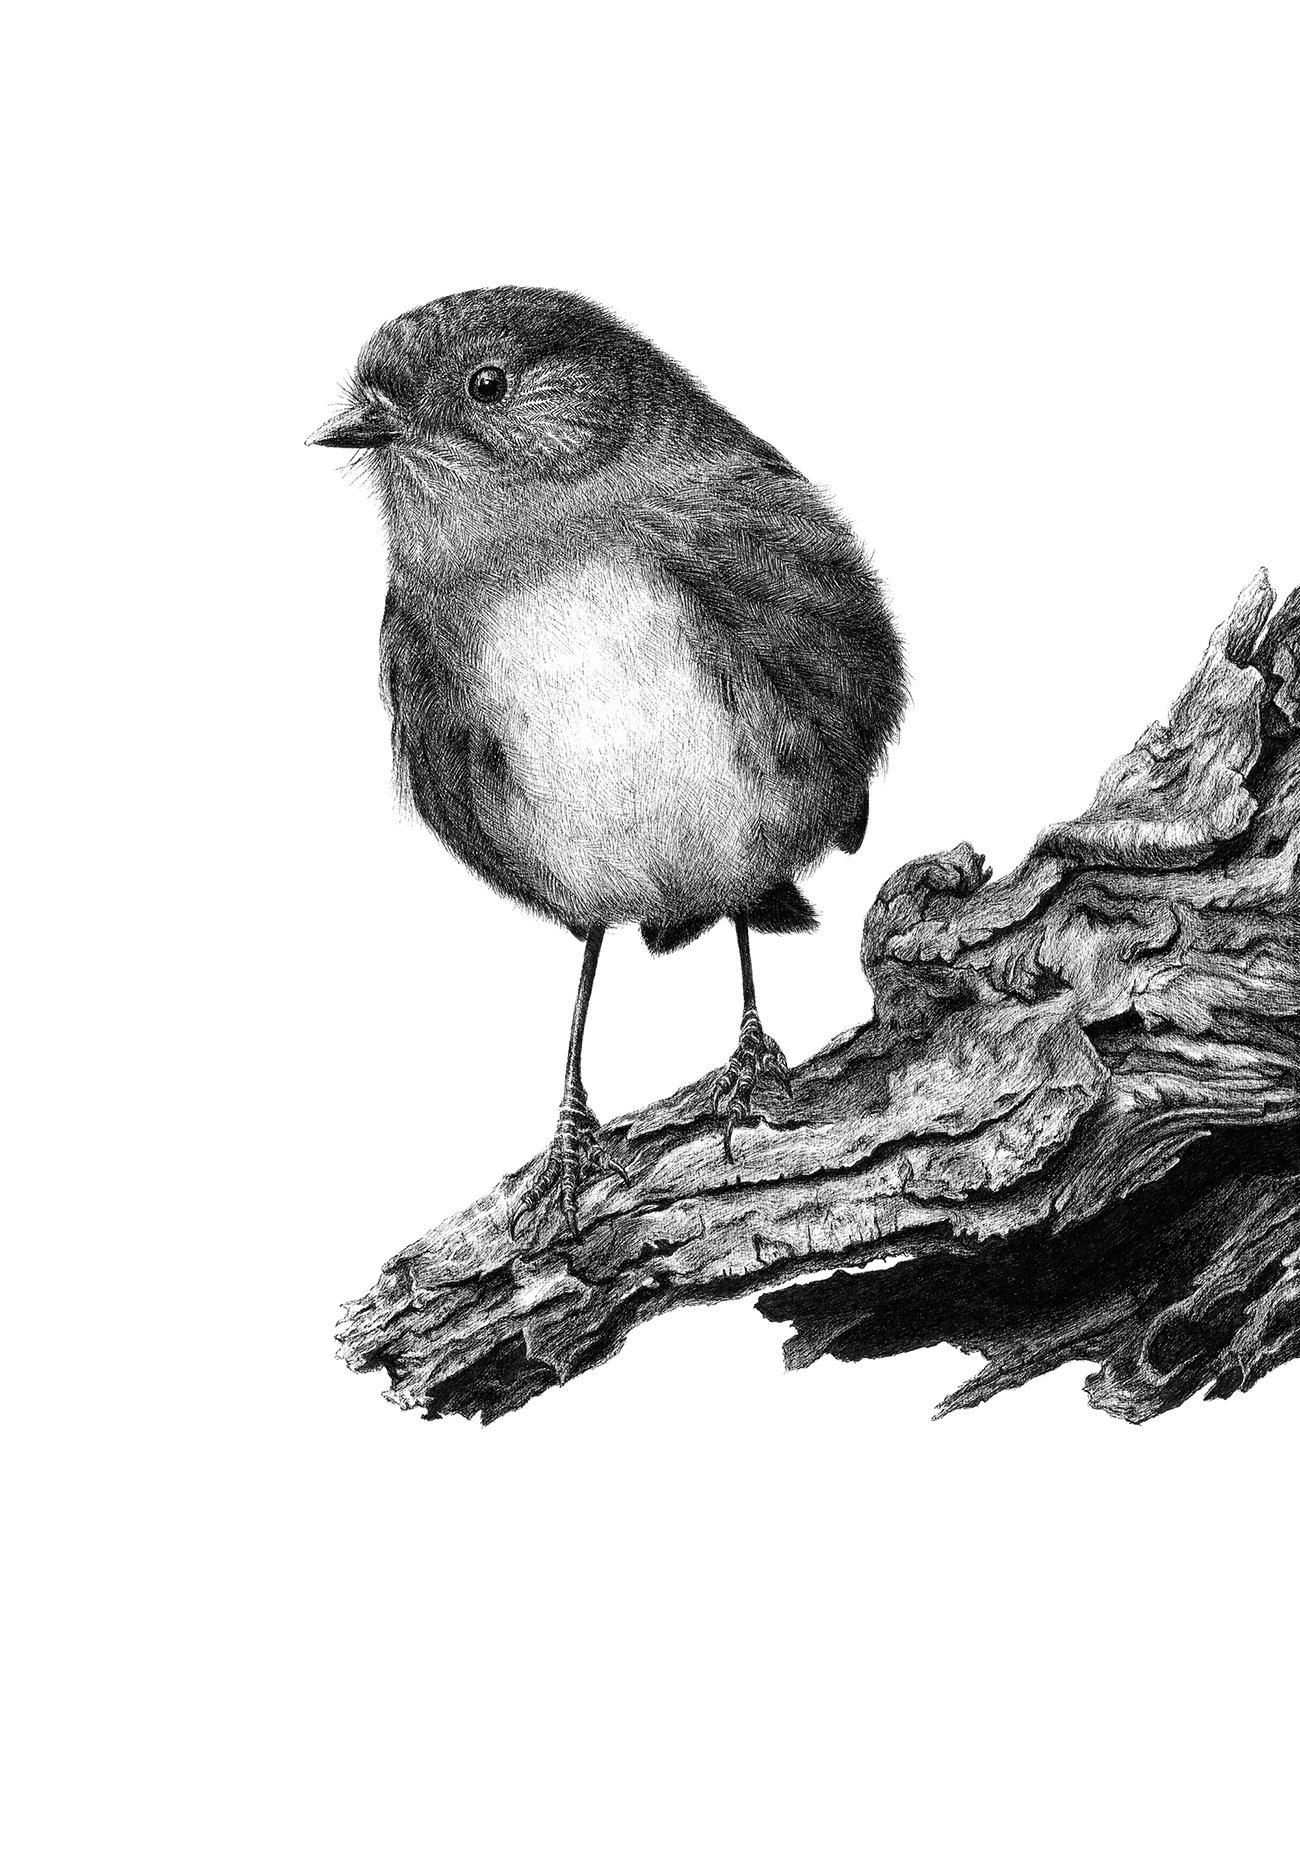 NZ South Island robin kakaruwai artwork Inquisitive Robin Hannah Shand Artist.jpg